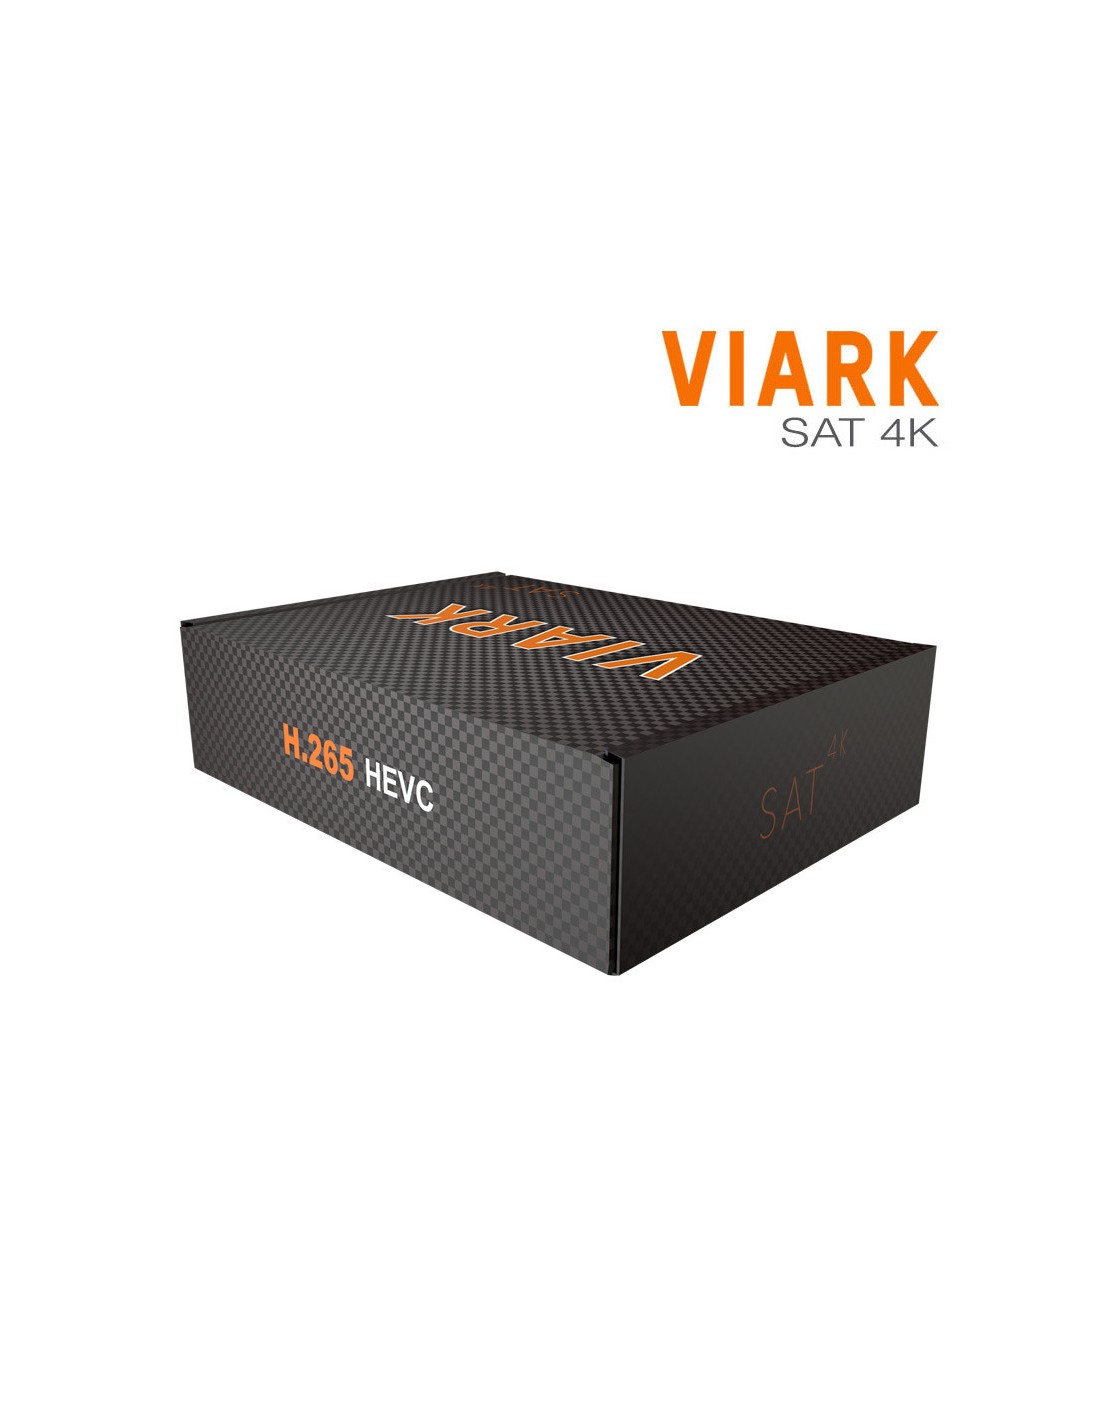 Renovacion Viark Sat 4k 1 año SP1 - Viark store